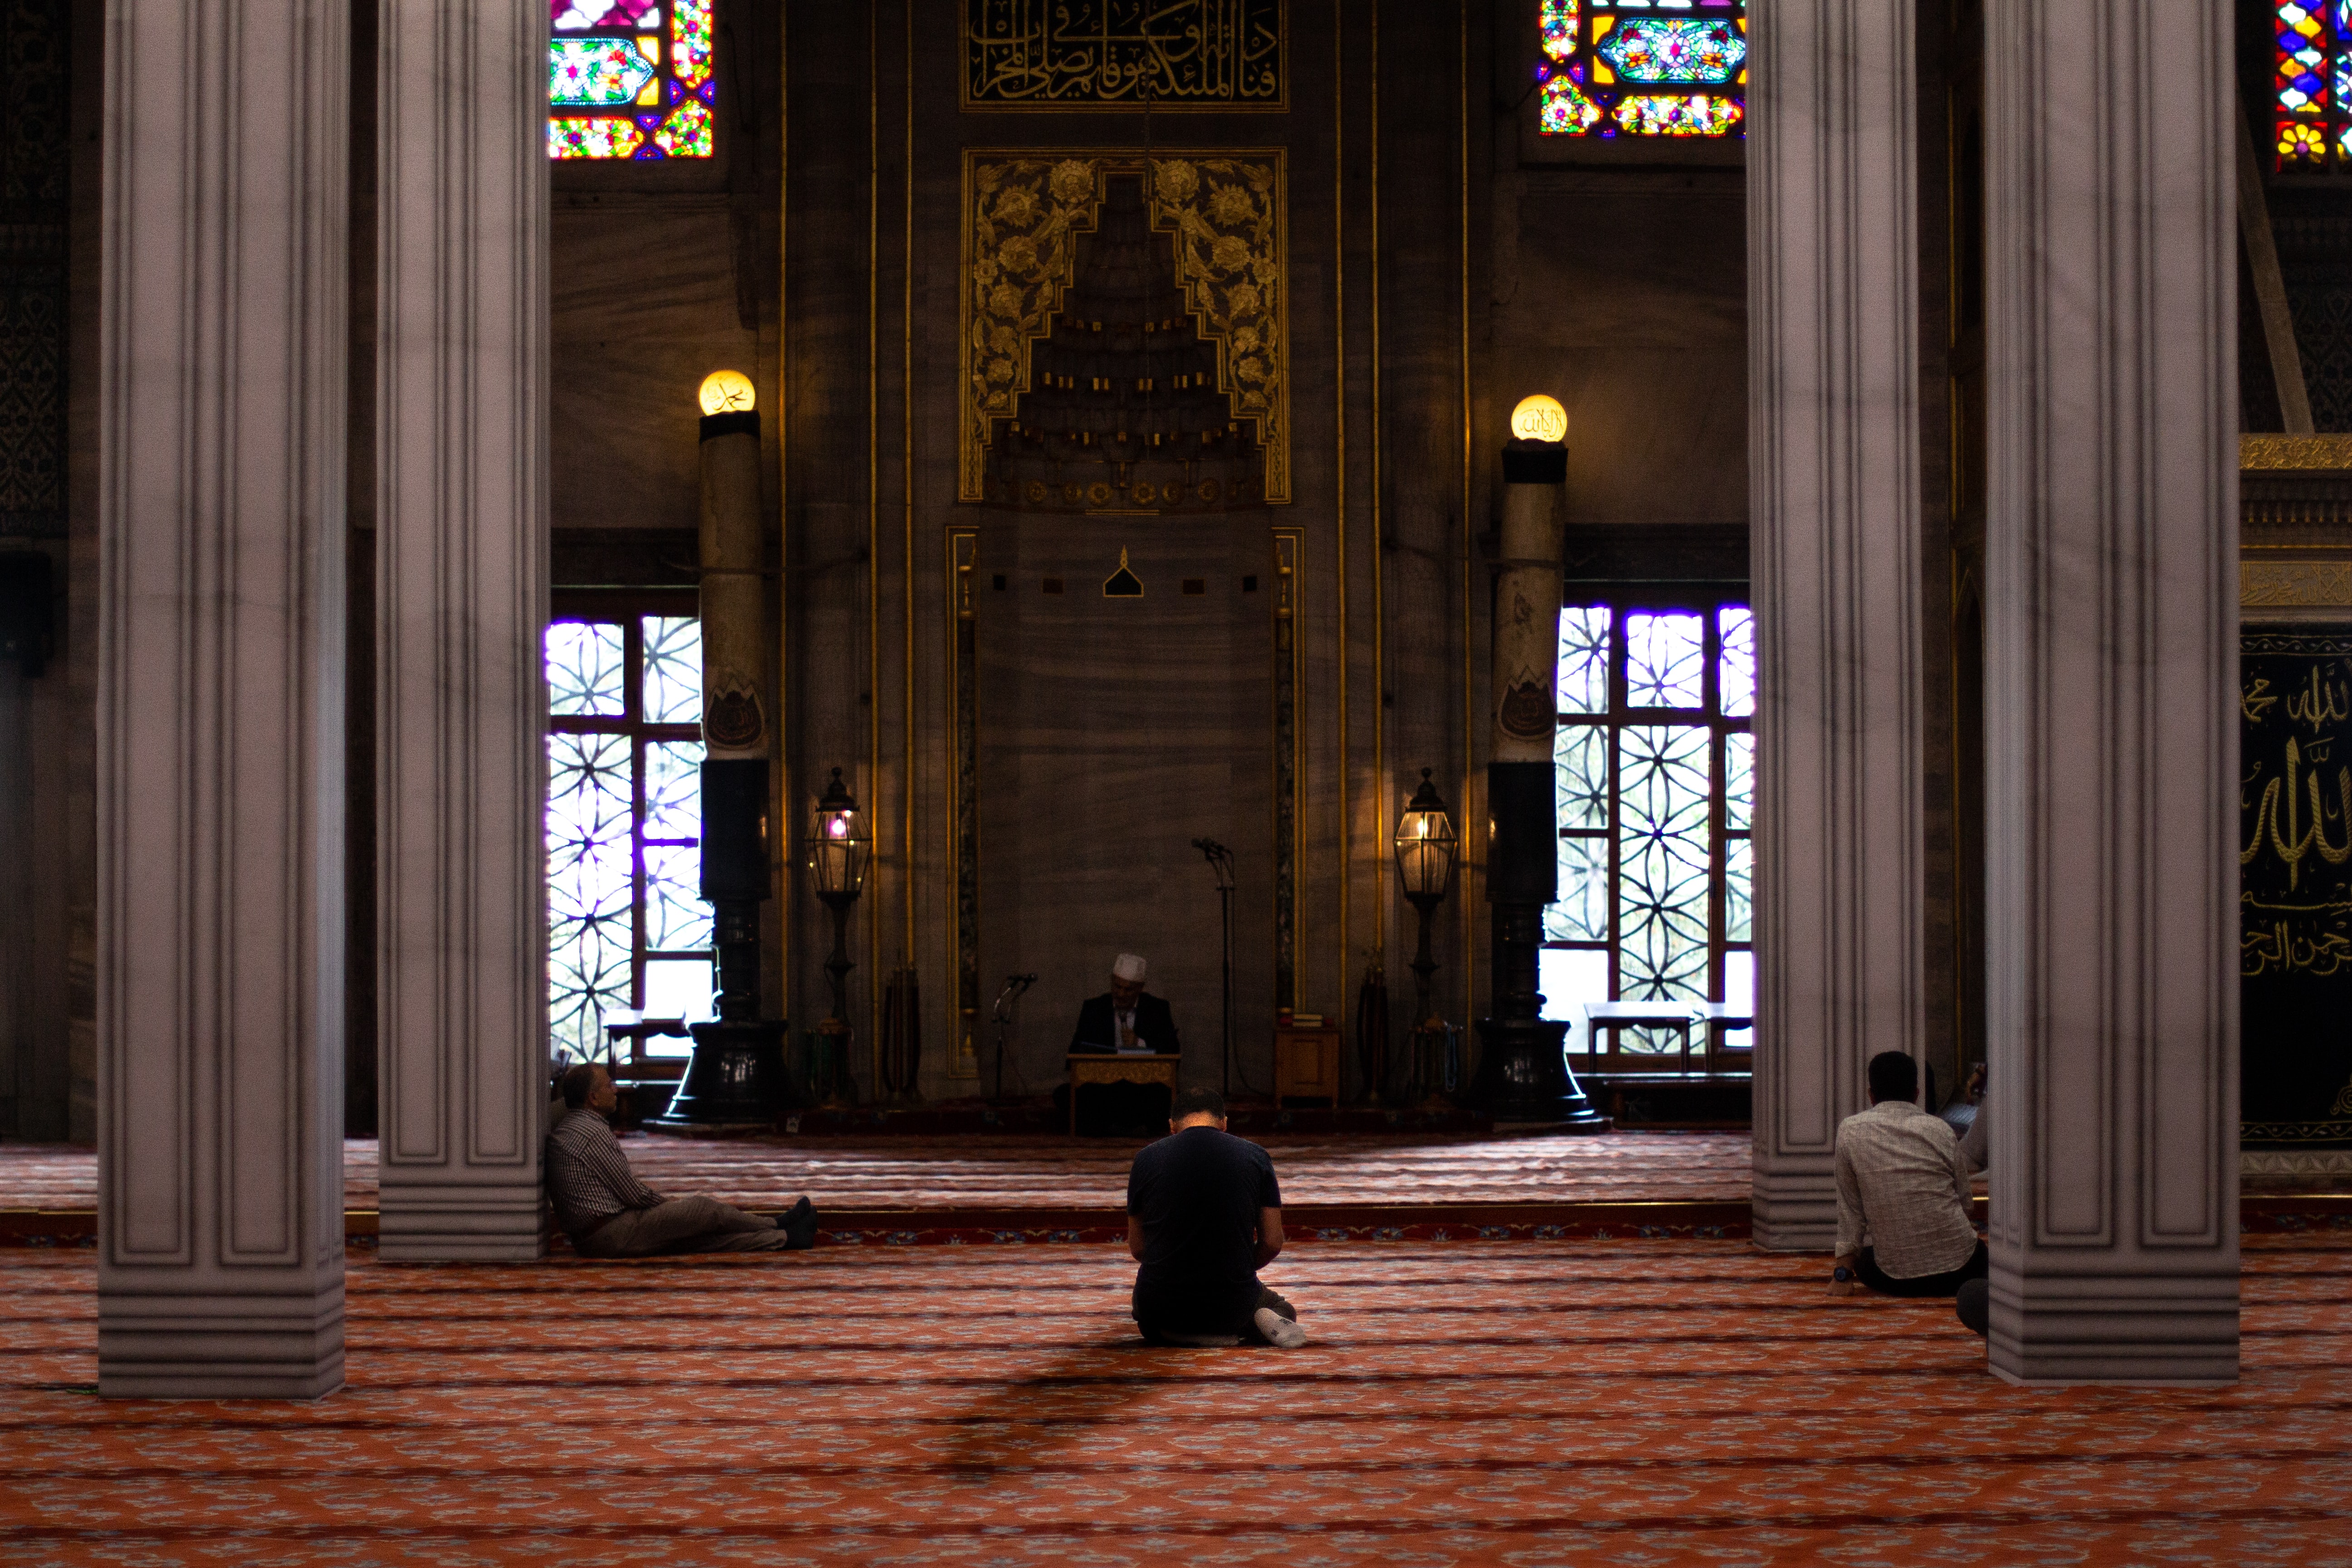 http://fgulen.com/images/fgulen/works-en/essentials-of-the-islamic-faith.jpg